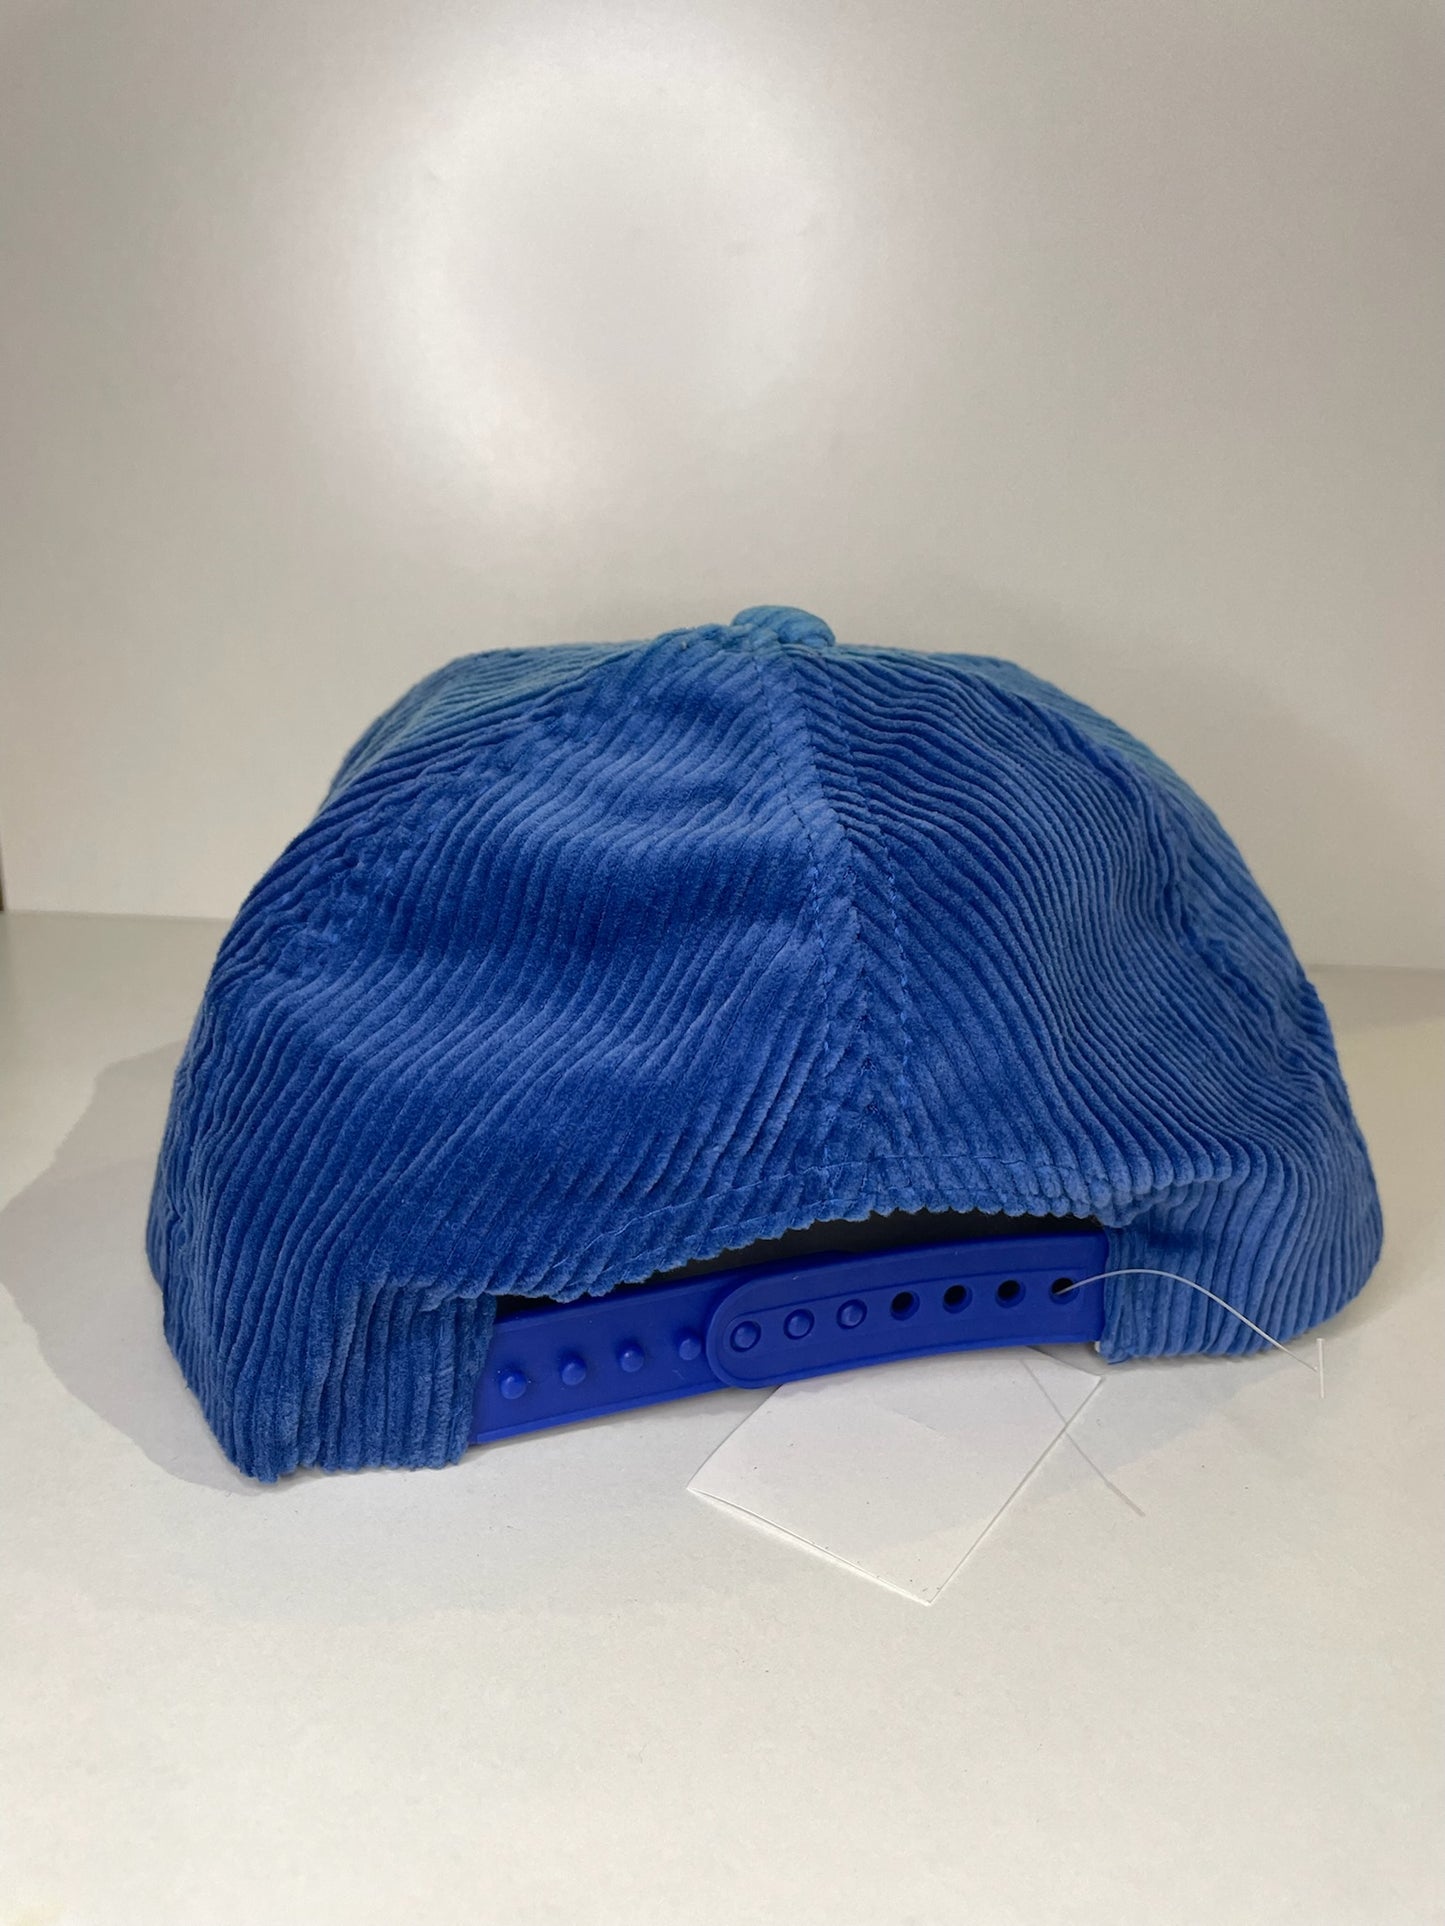 VINTAGE 90s NEW YORK METS TWINS CORDUROY SNAPBACK CAP HAT